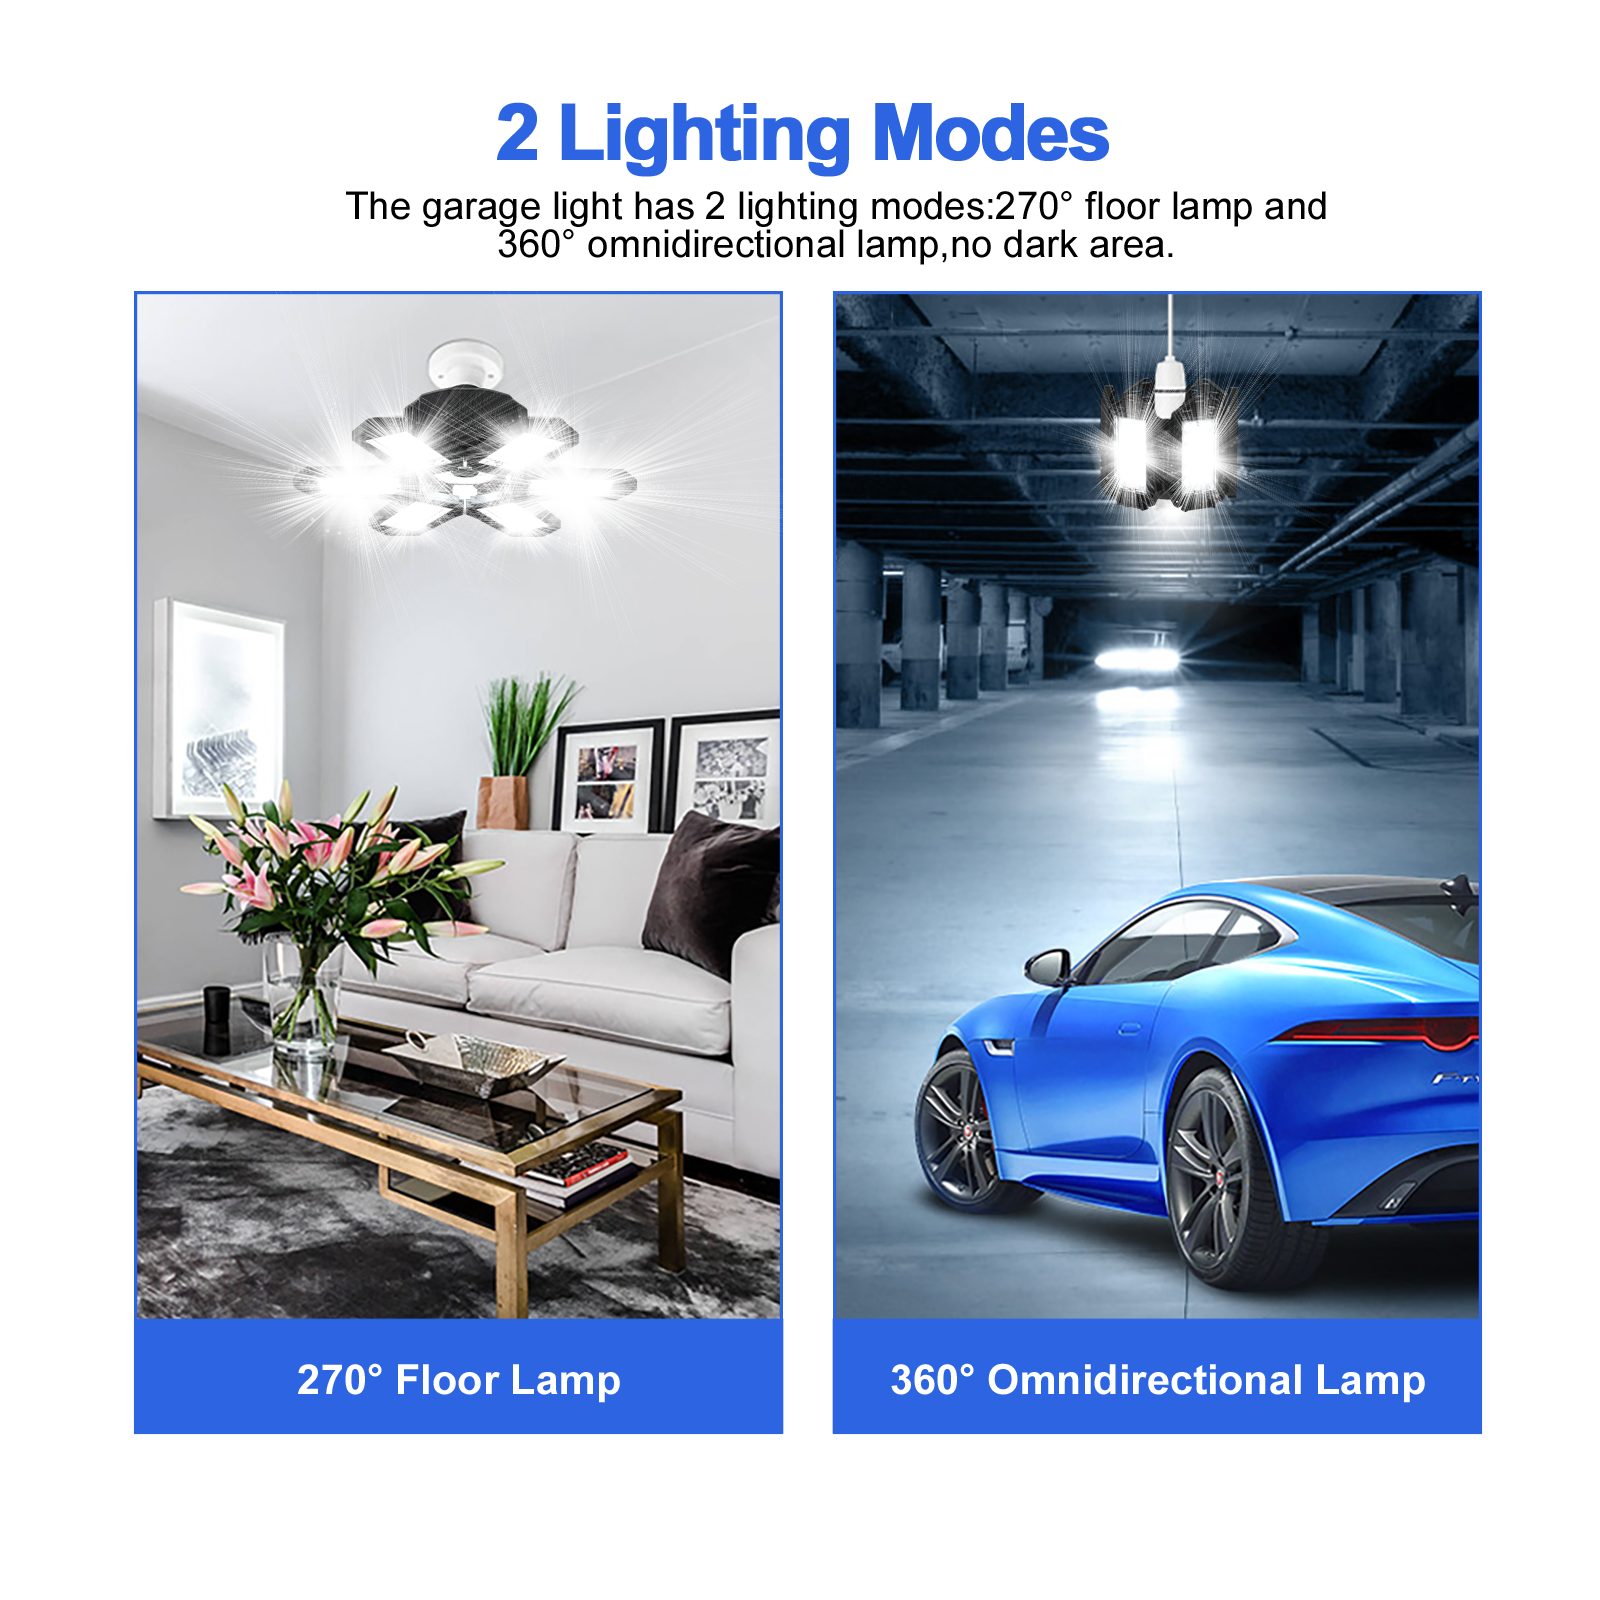 LED Garage Lights, 185W Deformable LED Garage Ceiling Lights with  Adjustable Panels, E26 E27 LED Lights for Garage